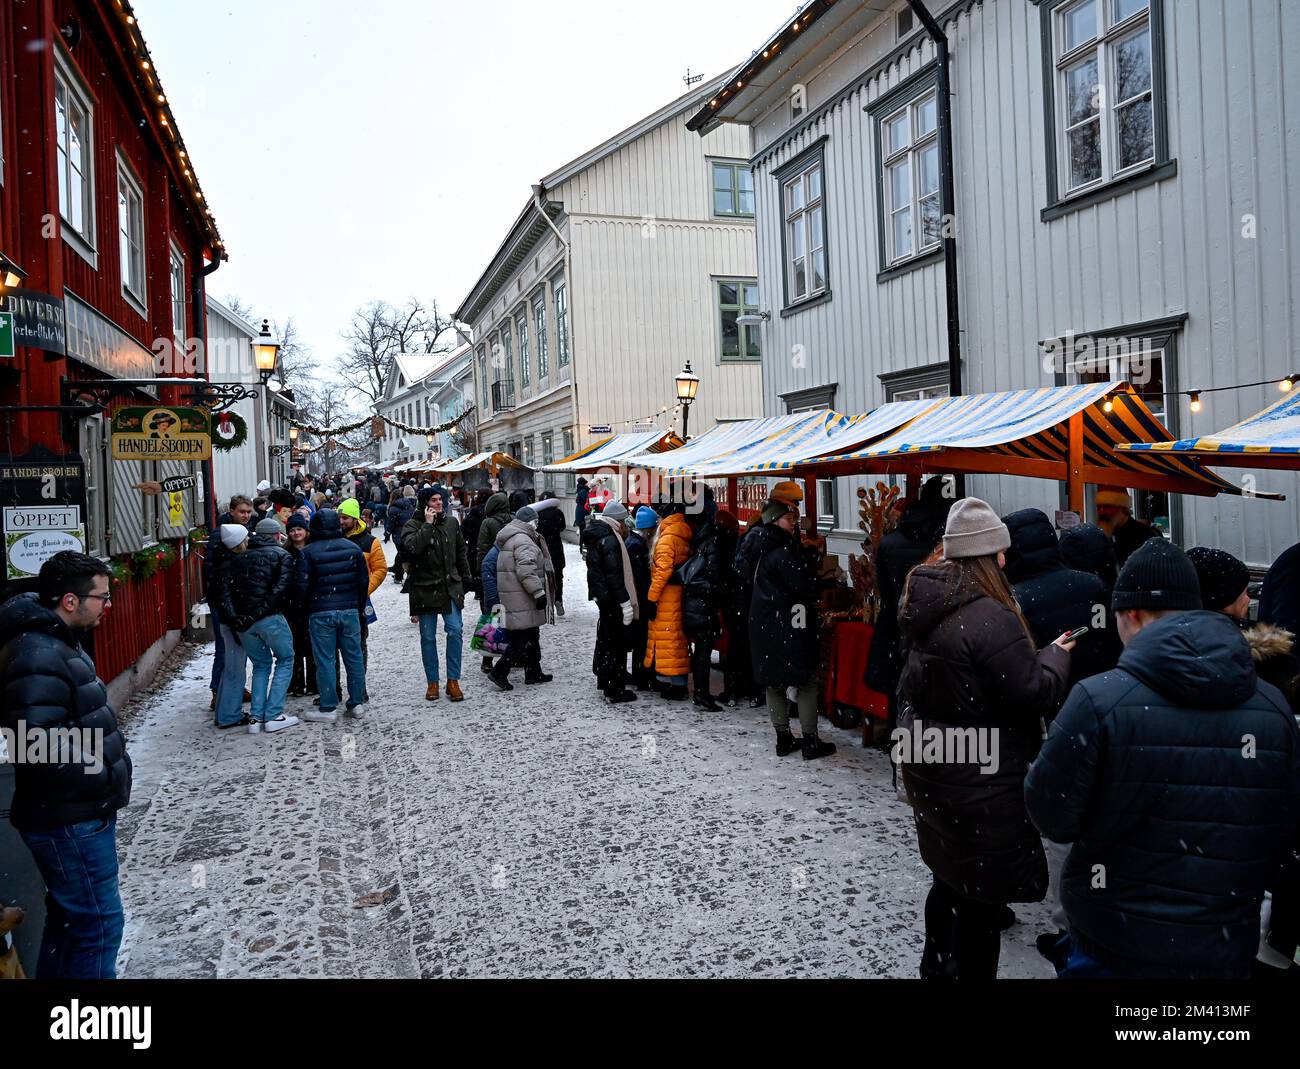 Orebro Sweden december 11 2022 Christmas fair in wooden town Stock Photo